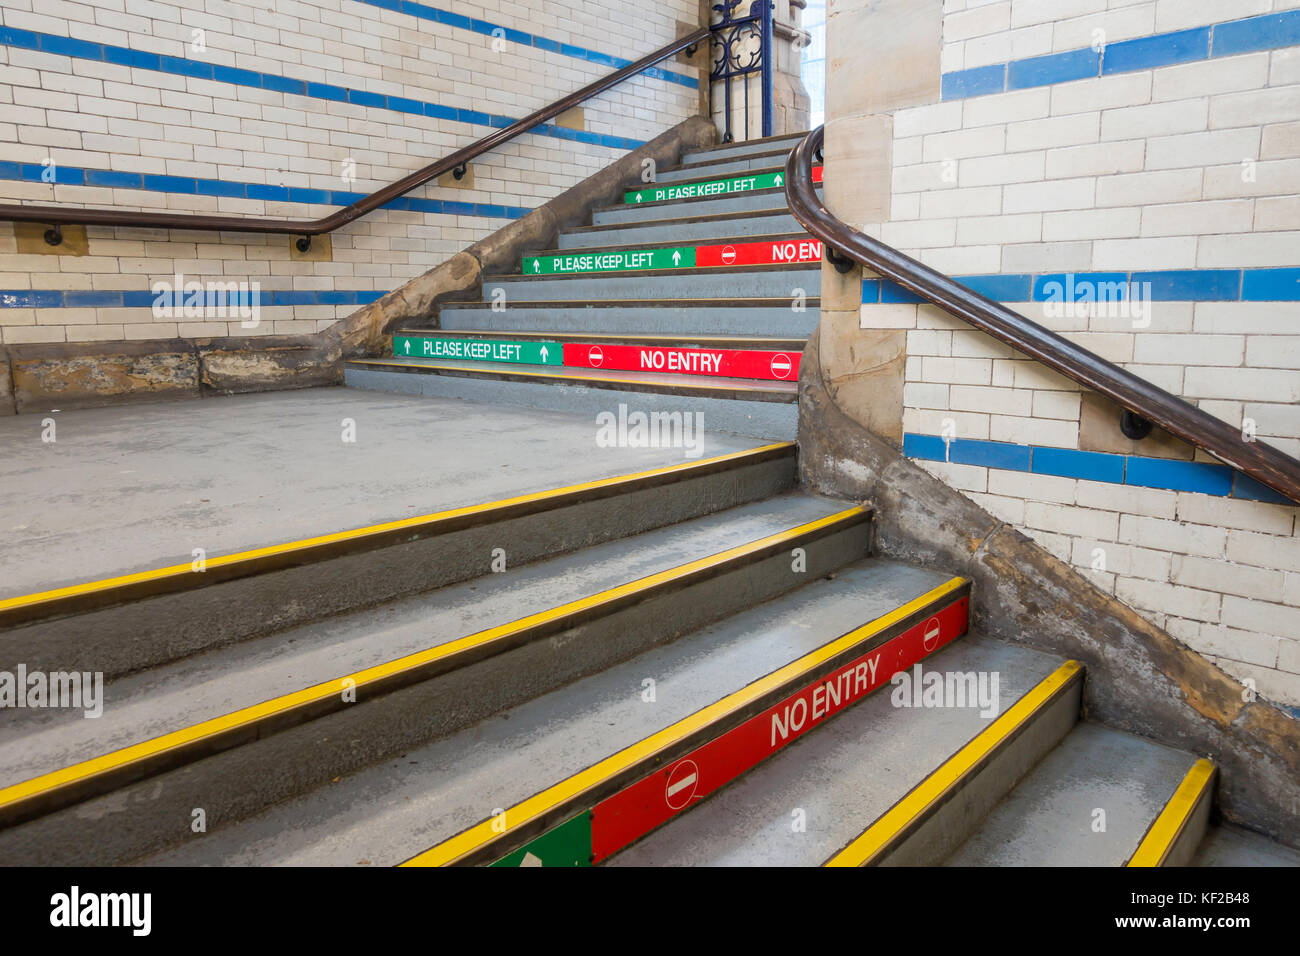 Bahn Bahnsteig Treppe Zugang Steigleitungen mit der Aufschrift "Bitte halten Sie sich links auf der linken Seite und "Kein Eintrag" auf der rechten Massen zu trennen Stockfoto